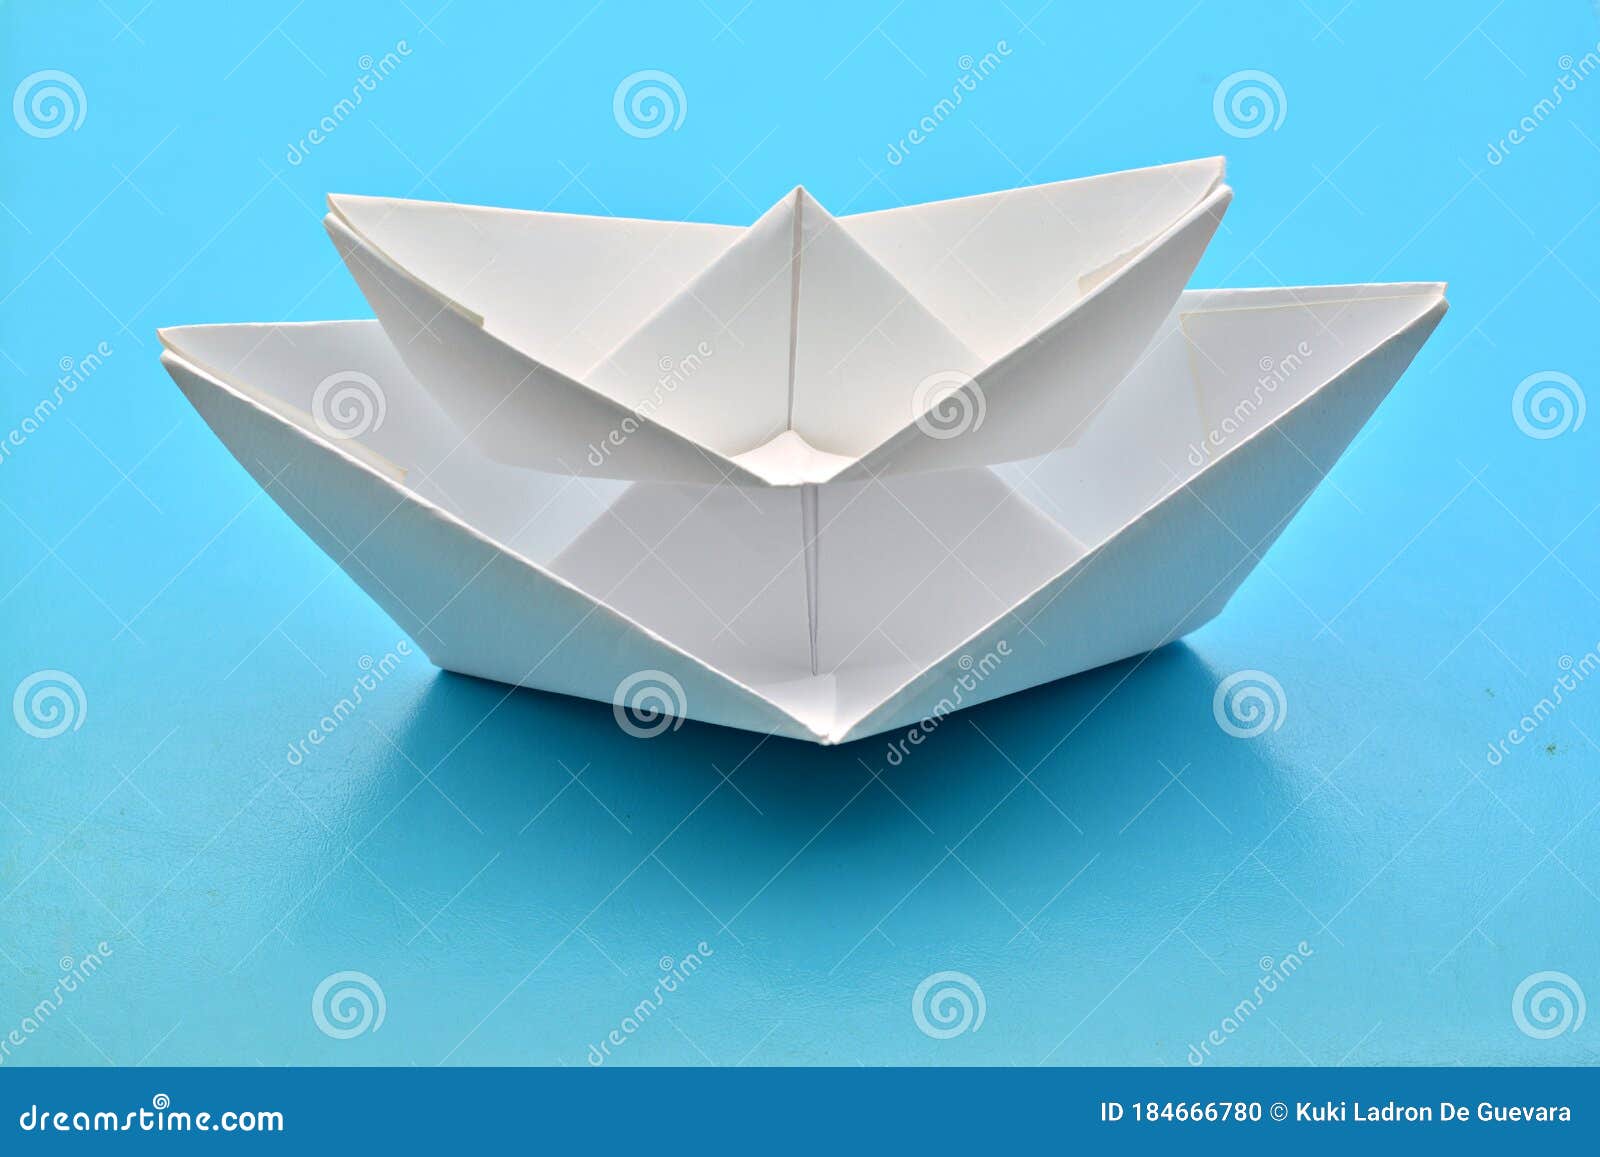 barco de papel sobre otro mas grande